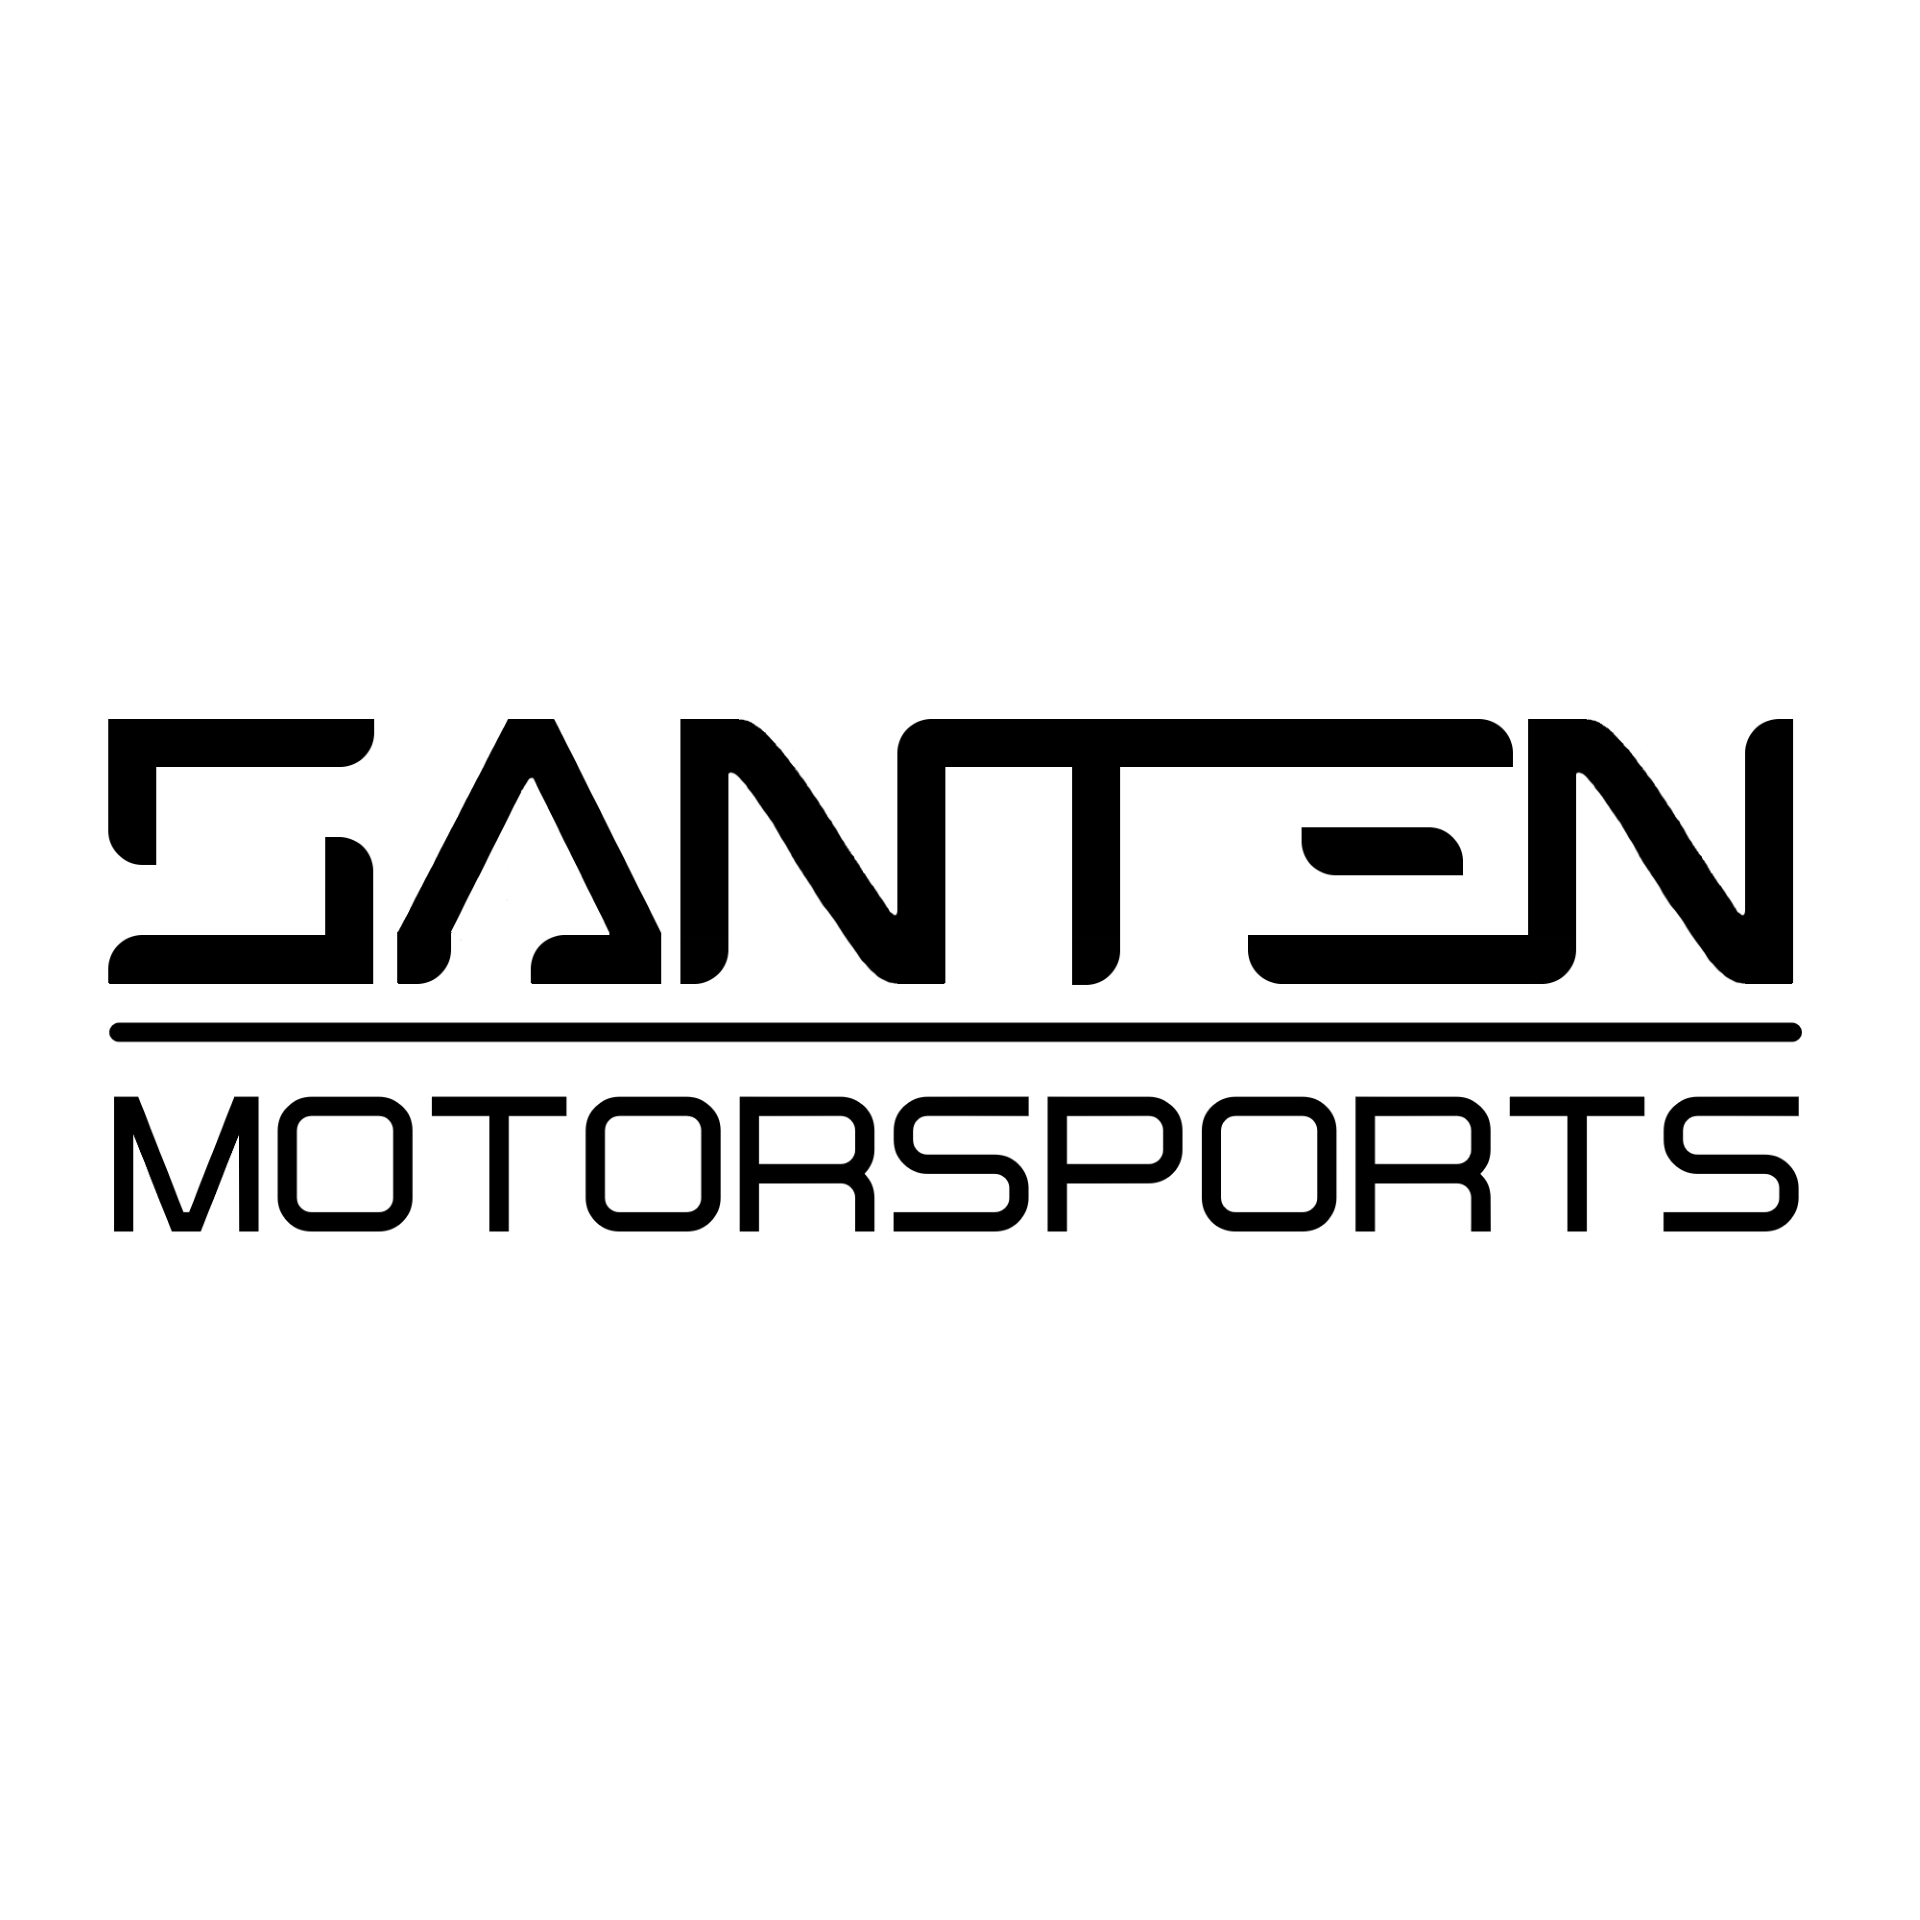 Santen Motorsports Logo.png